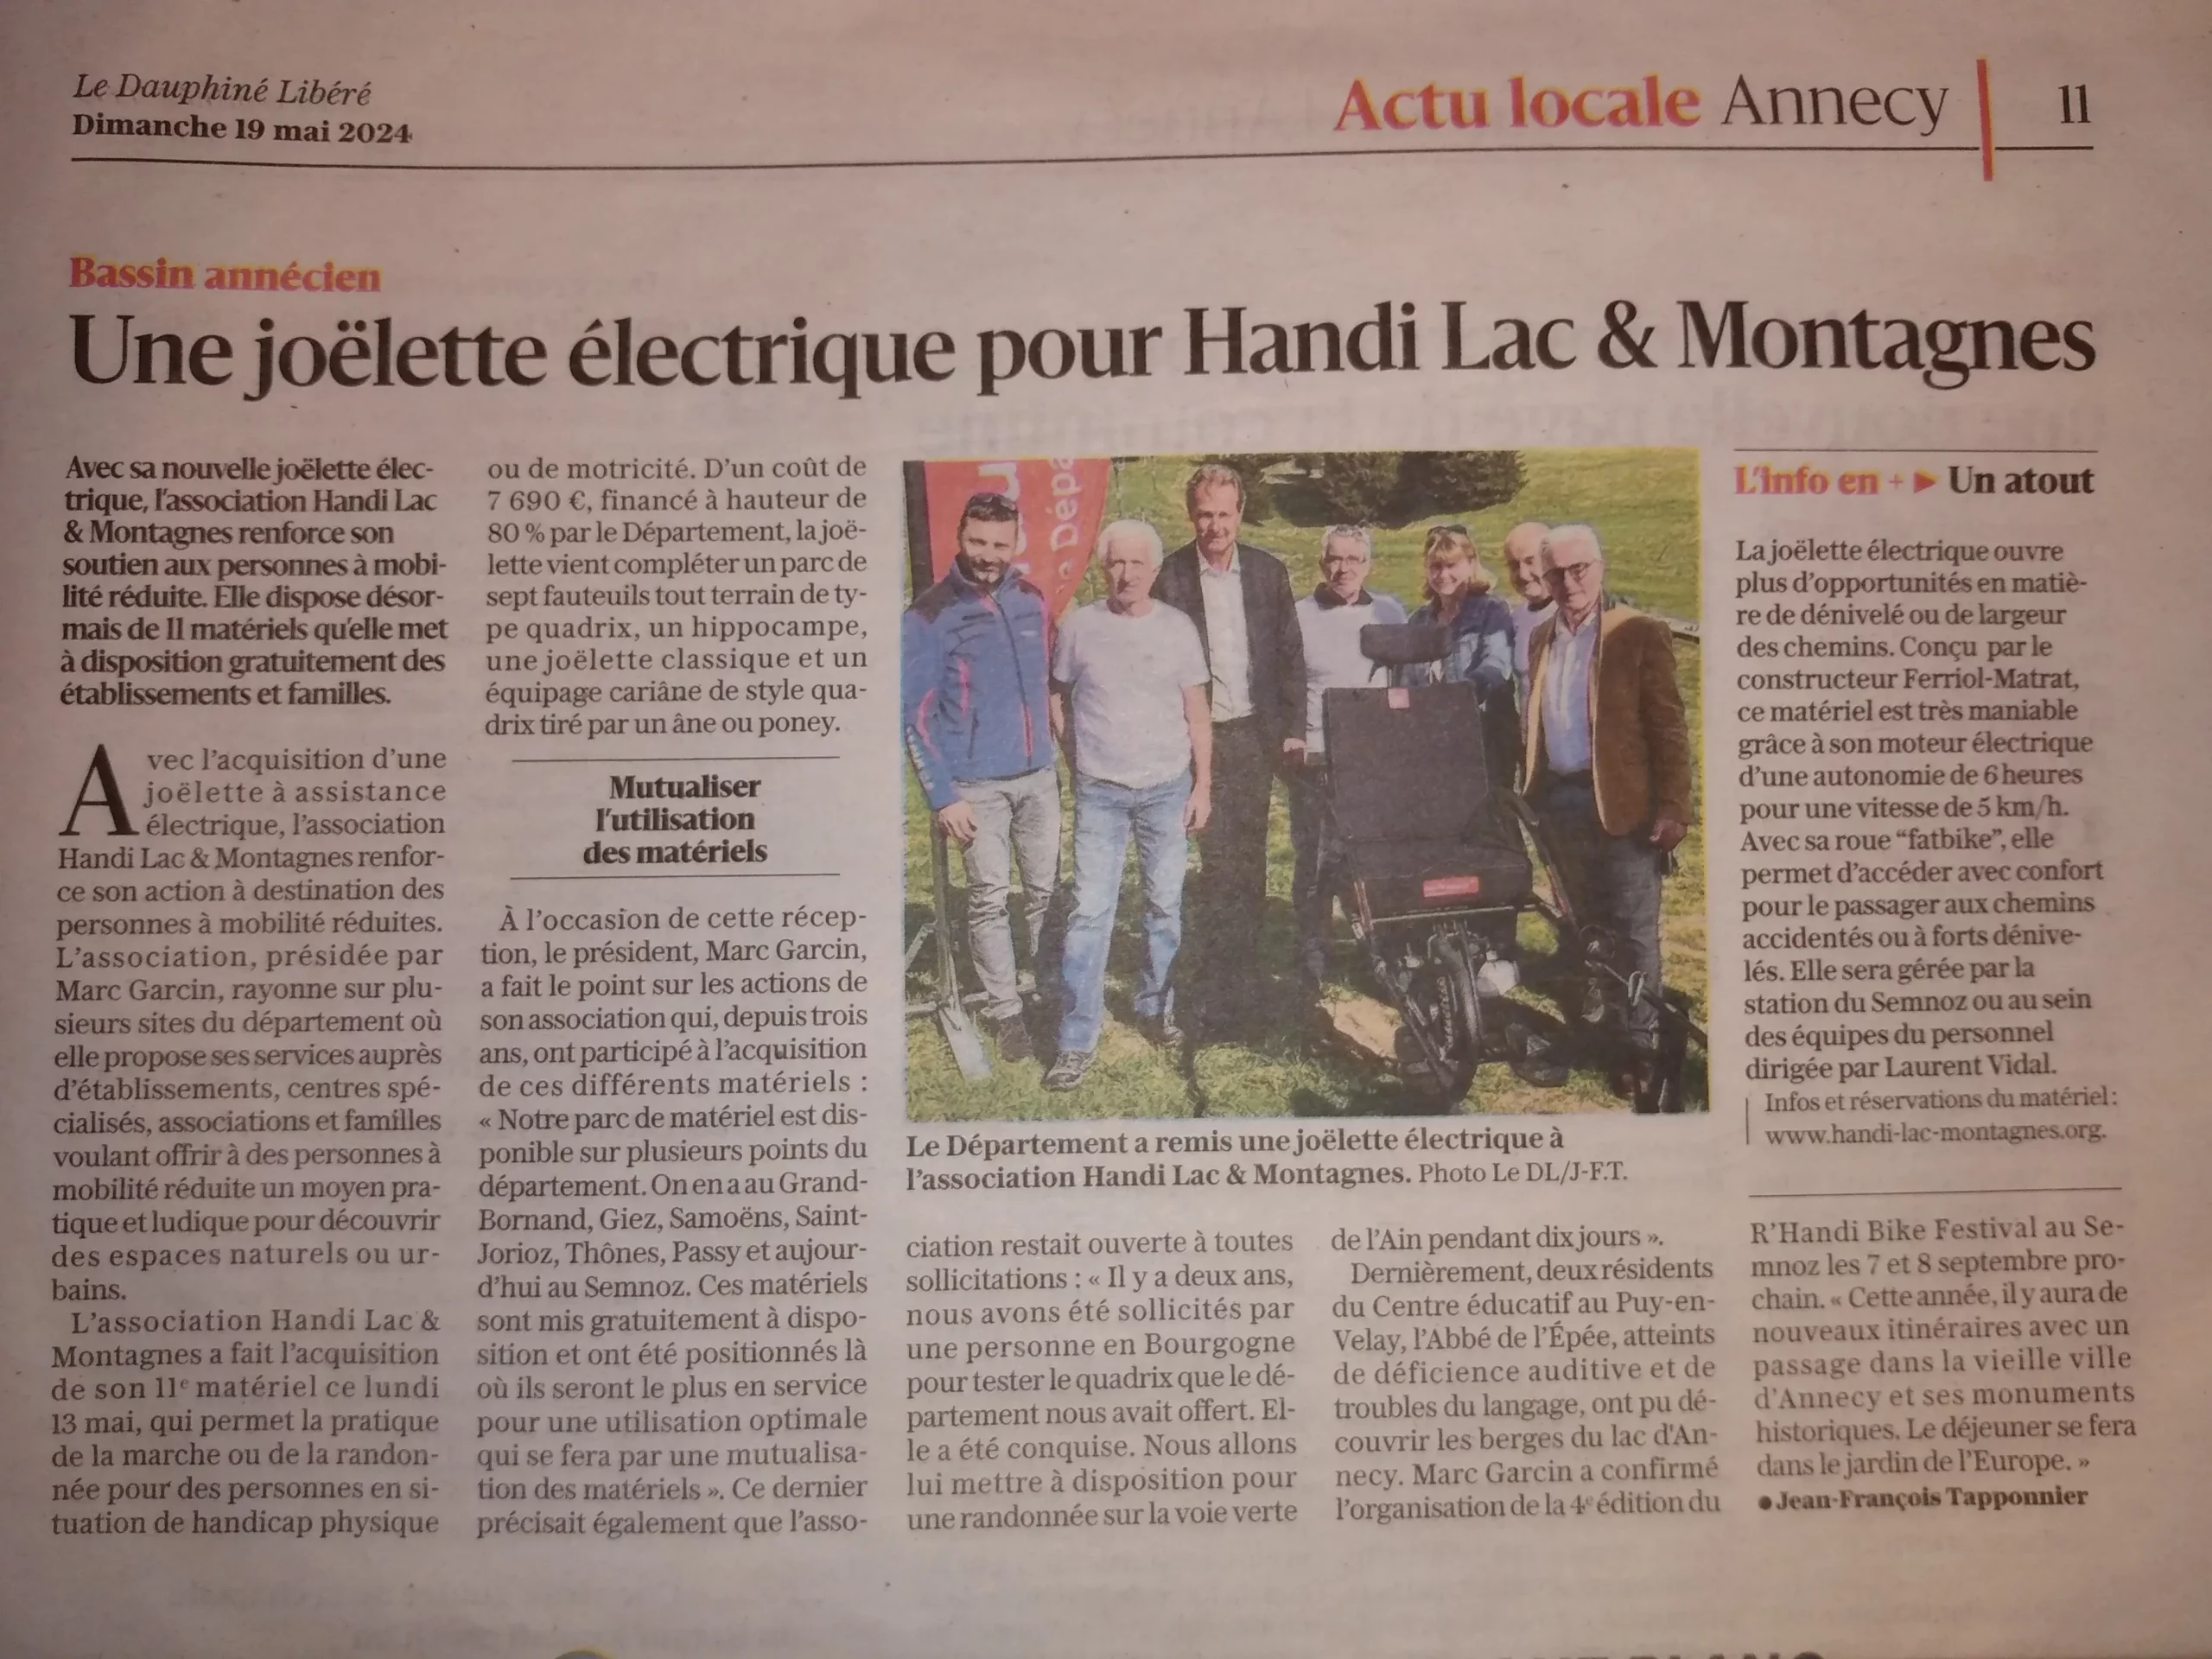 Article du Dauphiné Libéré paru le 19 mai 2024 avec pour titre "Une joëlette électrique pour Handi Lac & Montagnes"